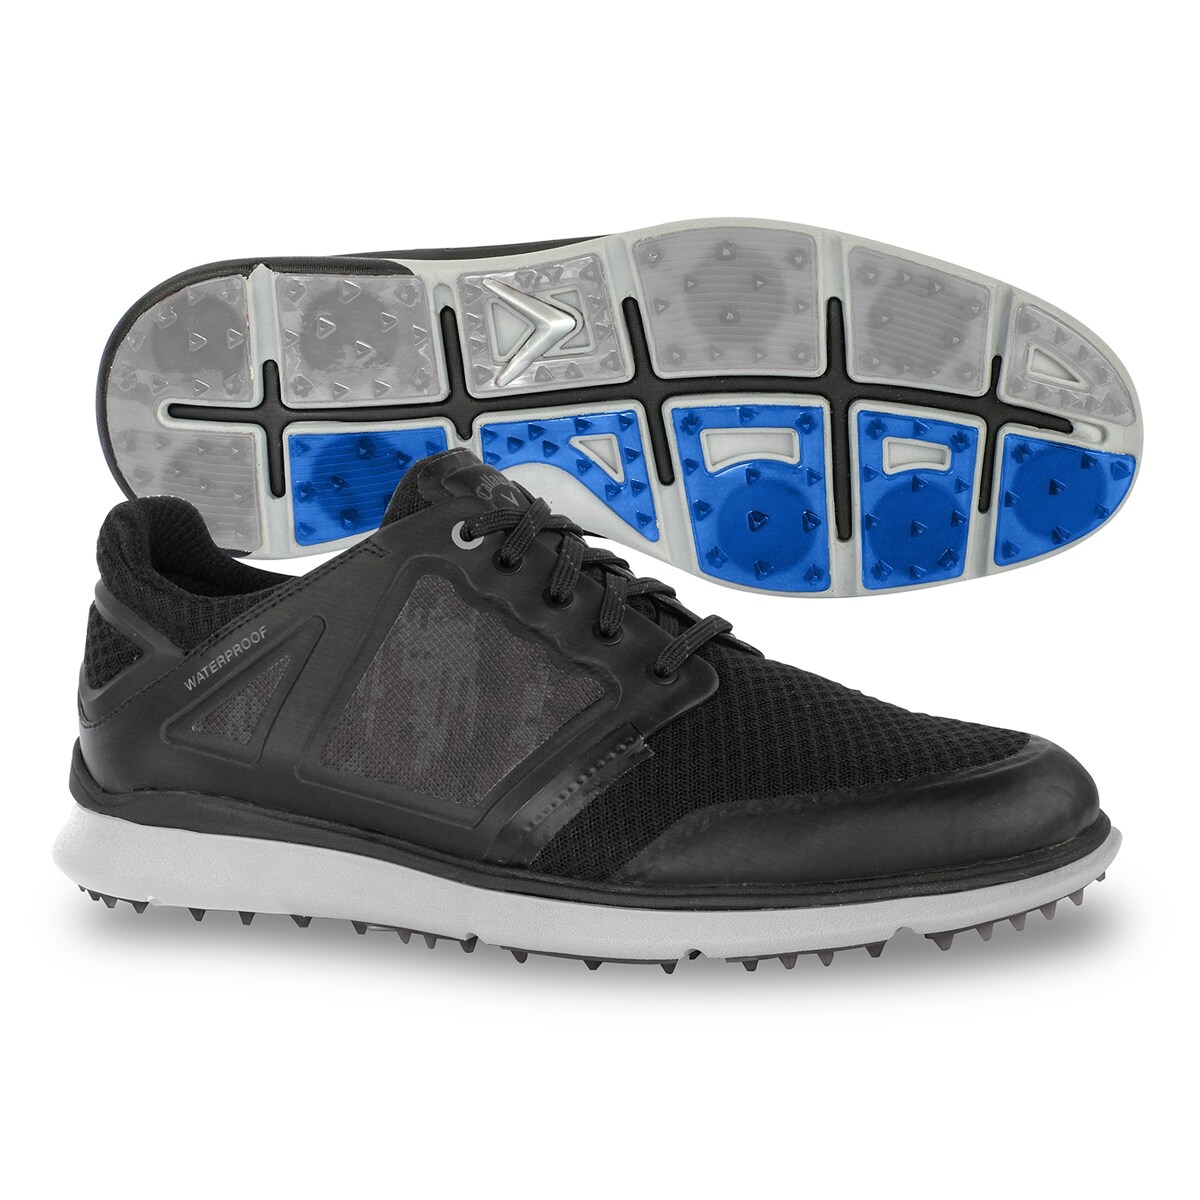 Callaway Men's Highland Golf Shoes 